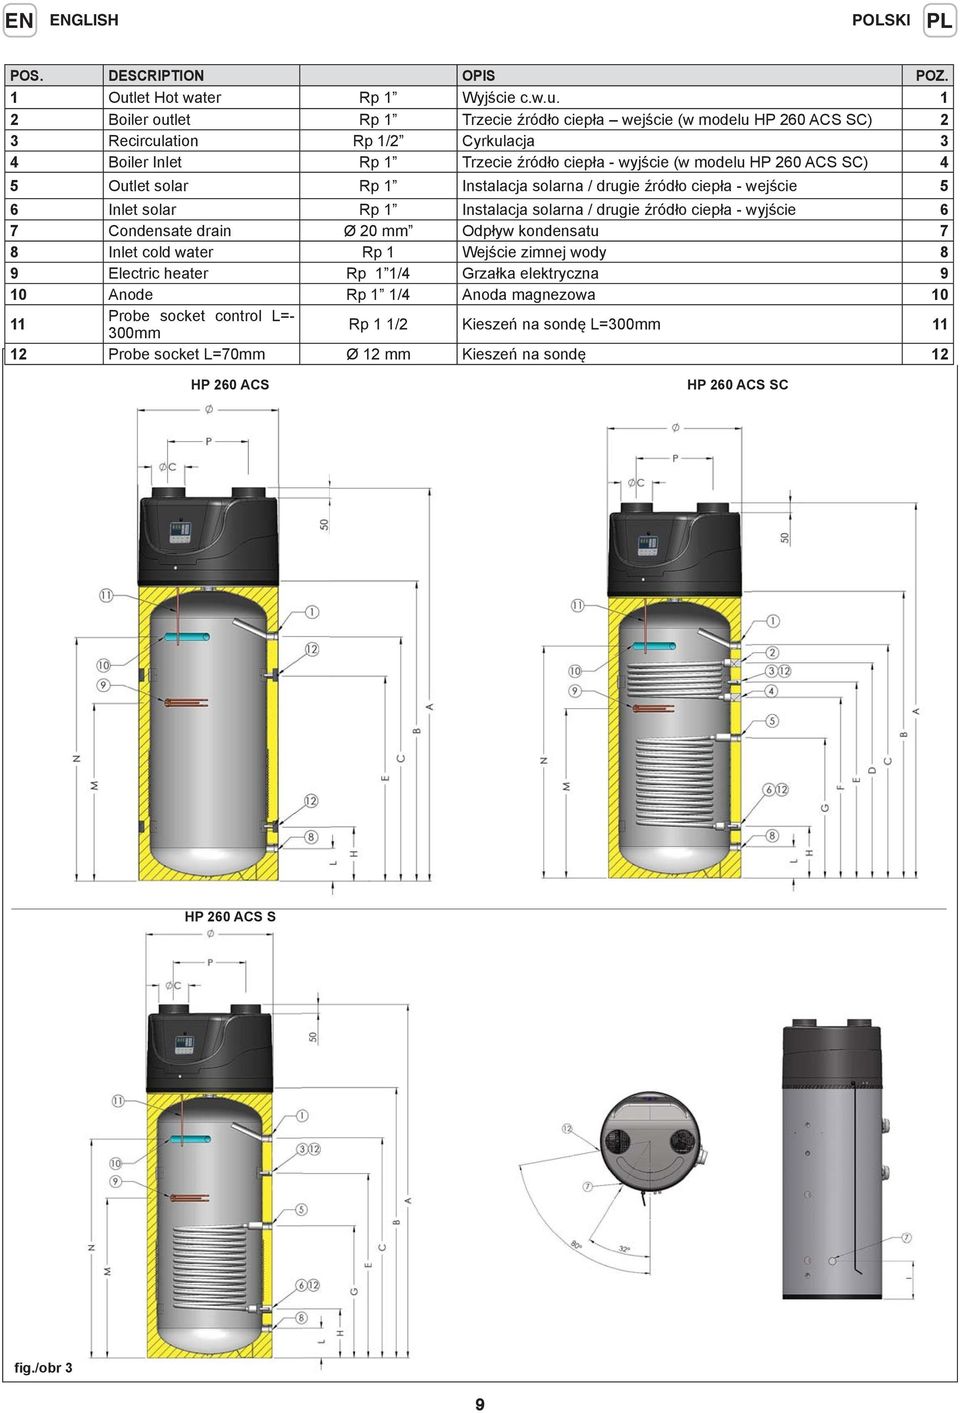 1 2 Boiler outlet Rp 1 Trzecie źródło ciepła wejście (w modelu HP 260 ACS SC) 2 3 Recirculation Rp 1/2 Cyrkulacja 3 4 Boiler Inlet Rp 1 Trzecie źródło ciepła - wyjście (w modelu HP 260 ACS